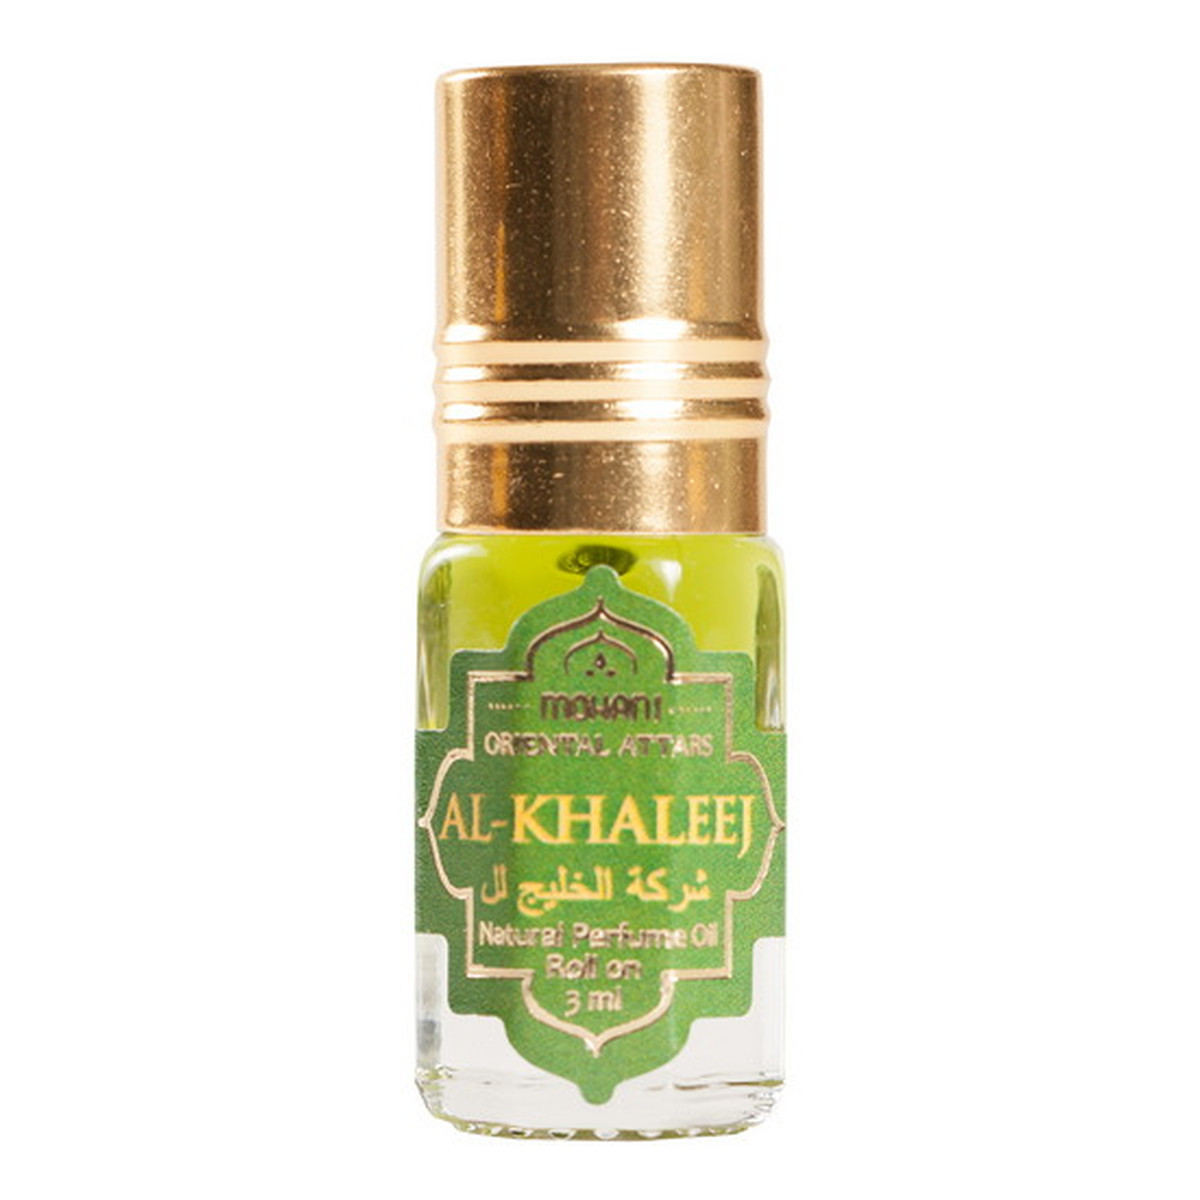 Mohani Al-Khaleej Orientalne Perfumy 3ml